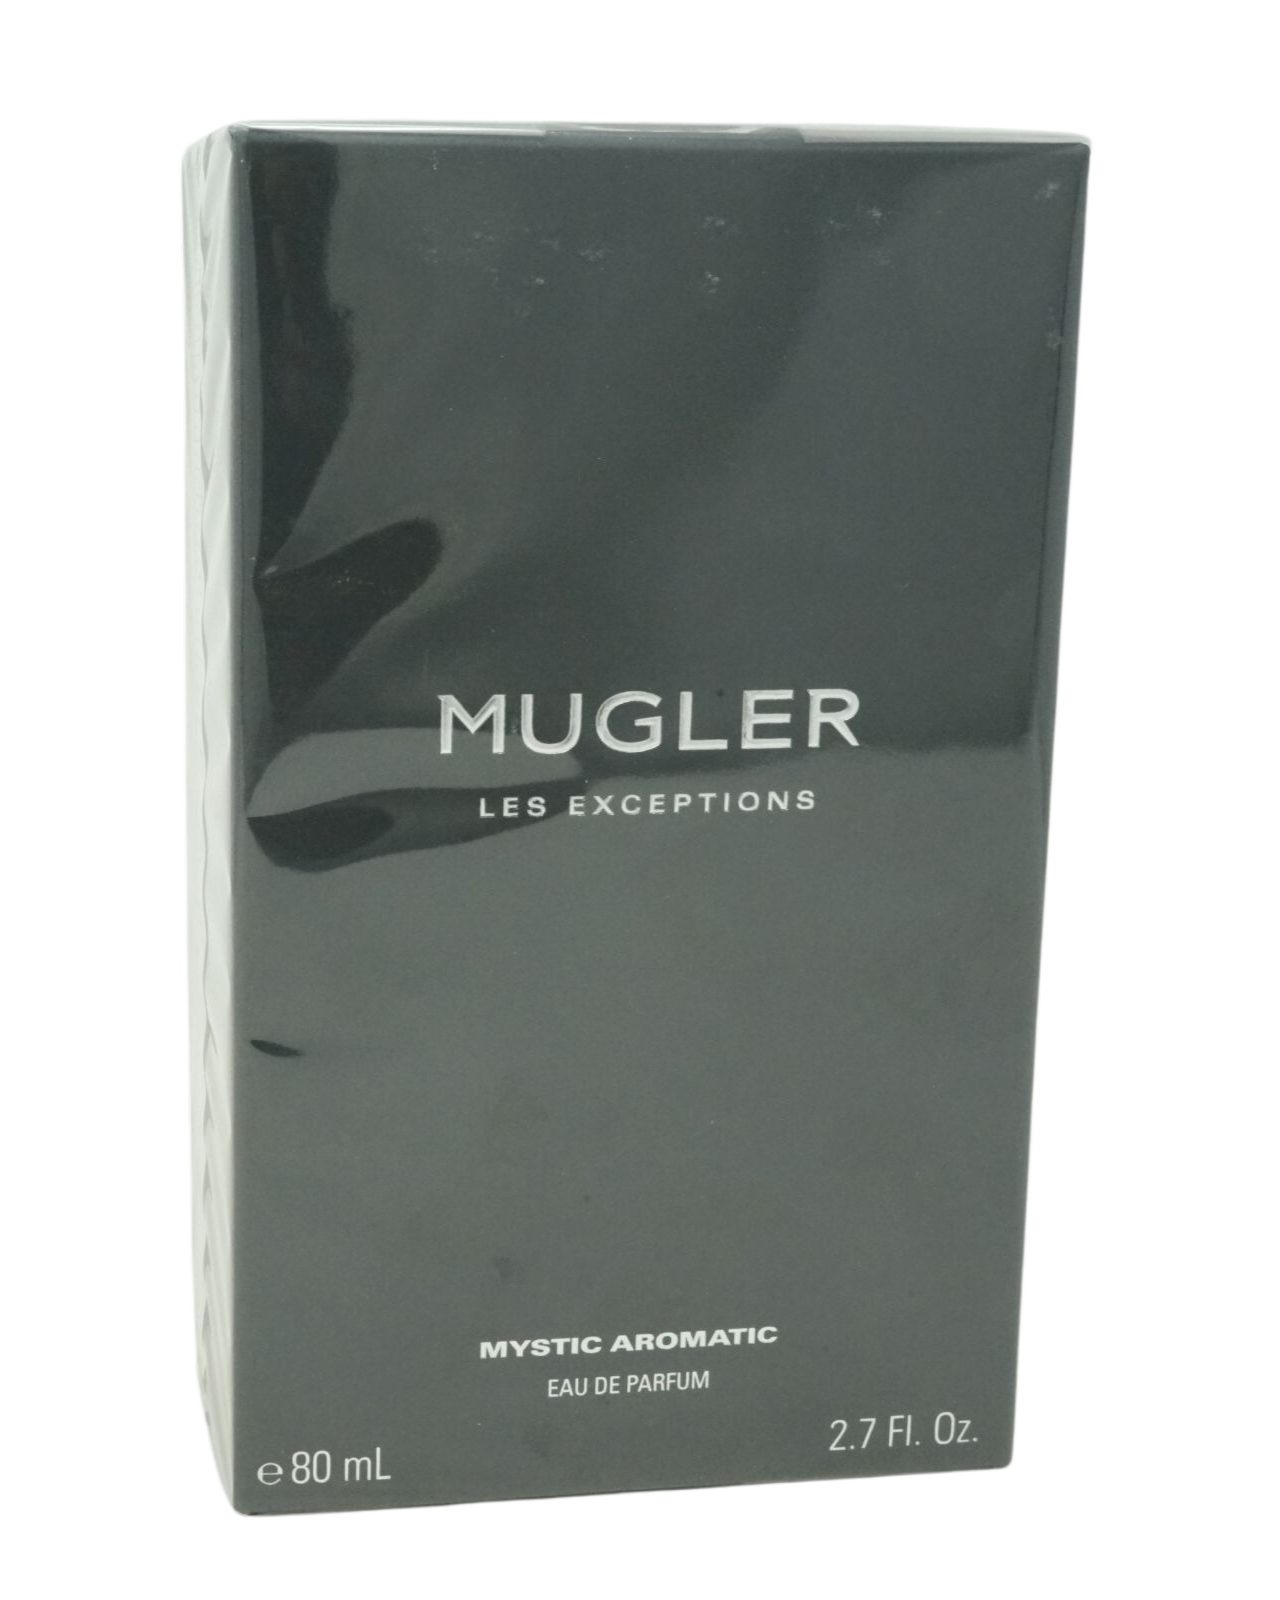 Thierry Mugler Eau de Parfum Thierry Mugler Les Exceptions Mystic Aromatic Eau de parfum 80ml